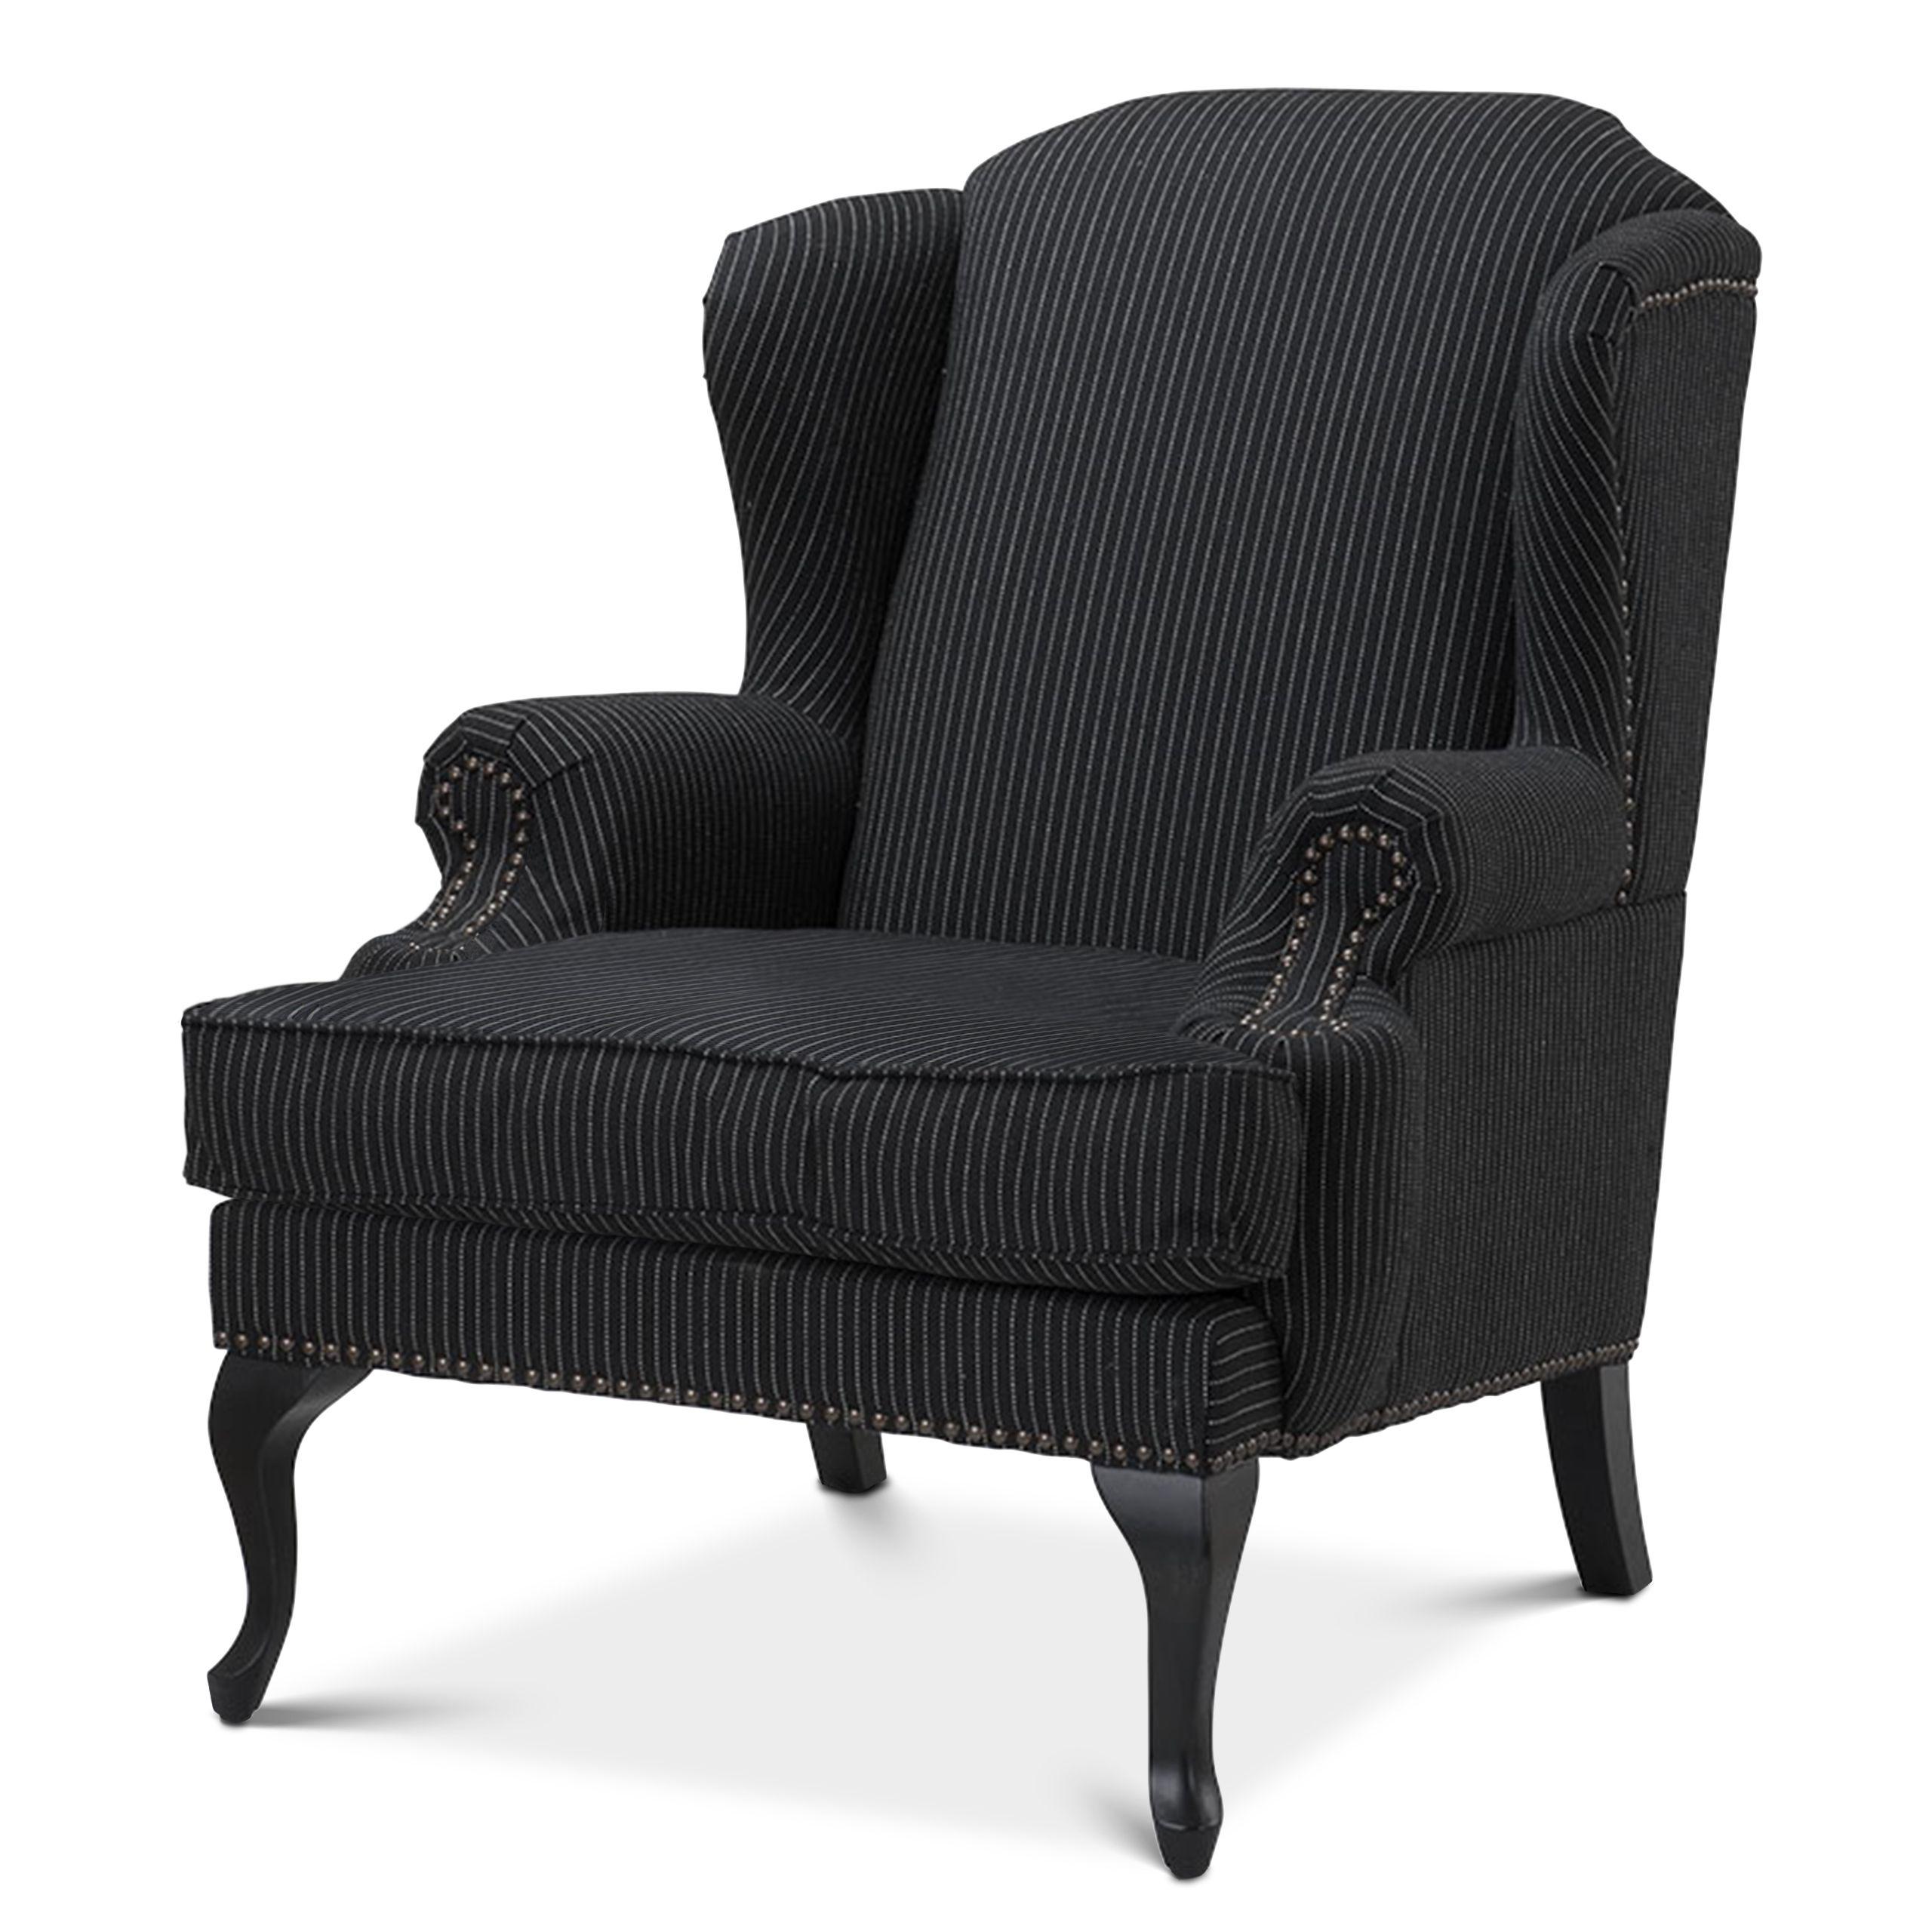 Купить Кресло Chair Frank Sinatra в интернет-магазине roooms.ru